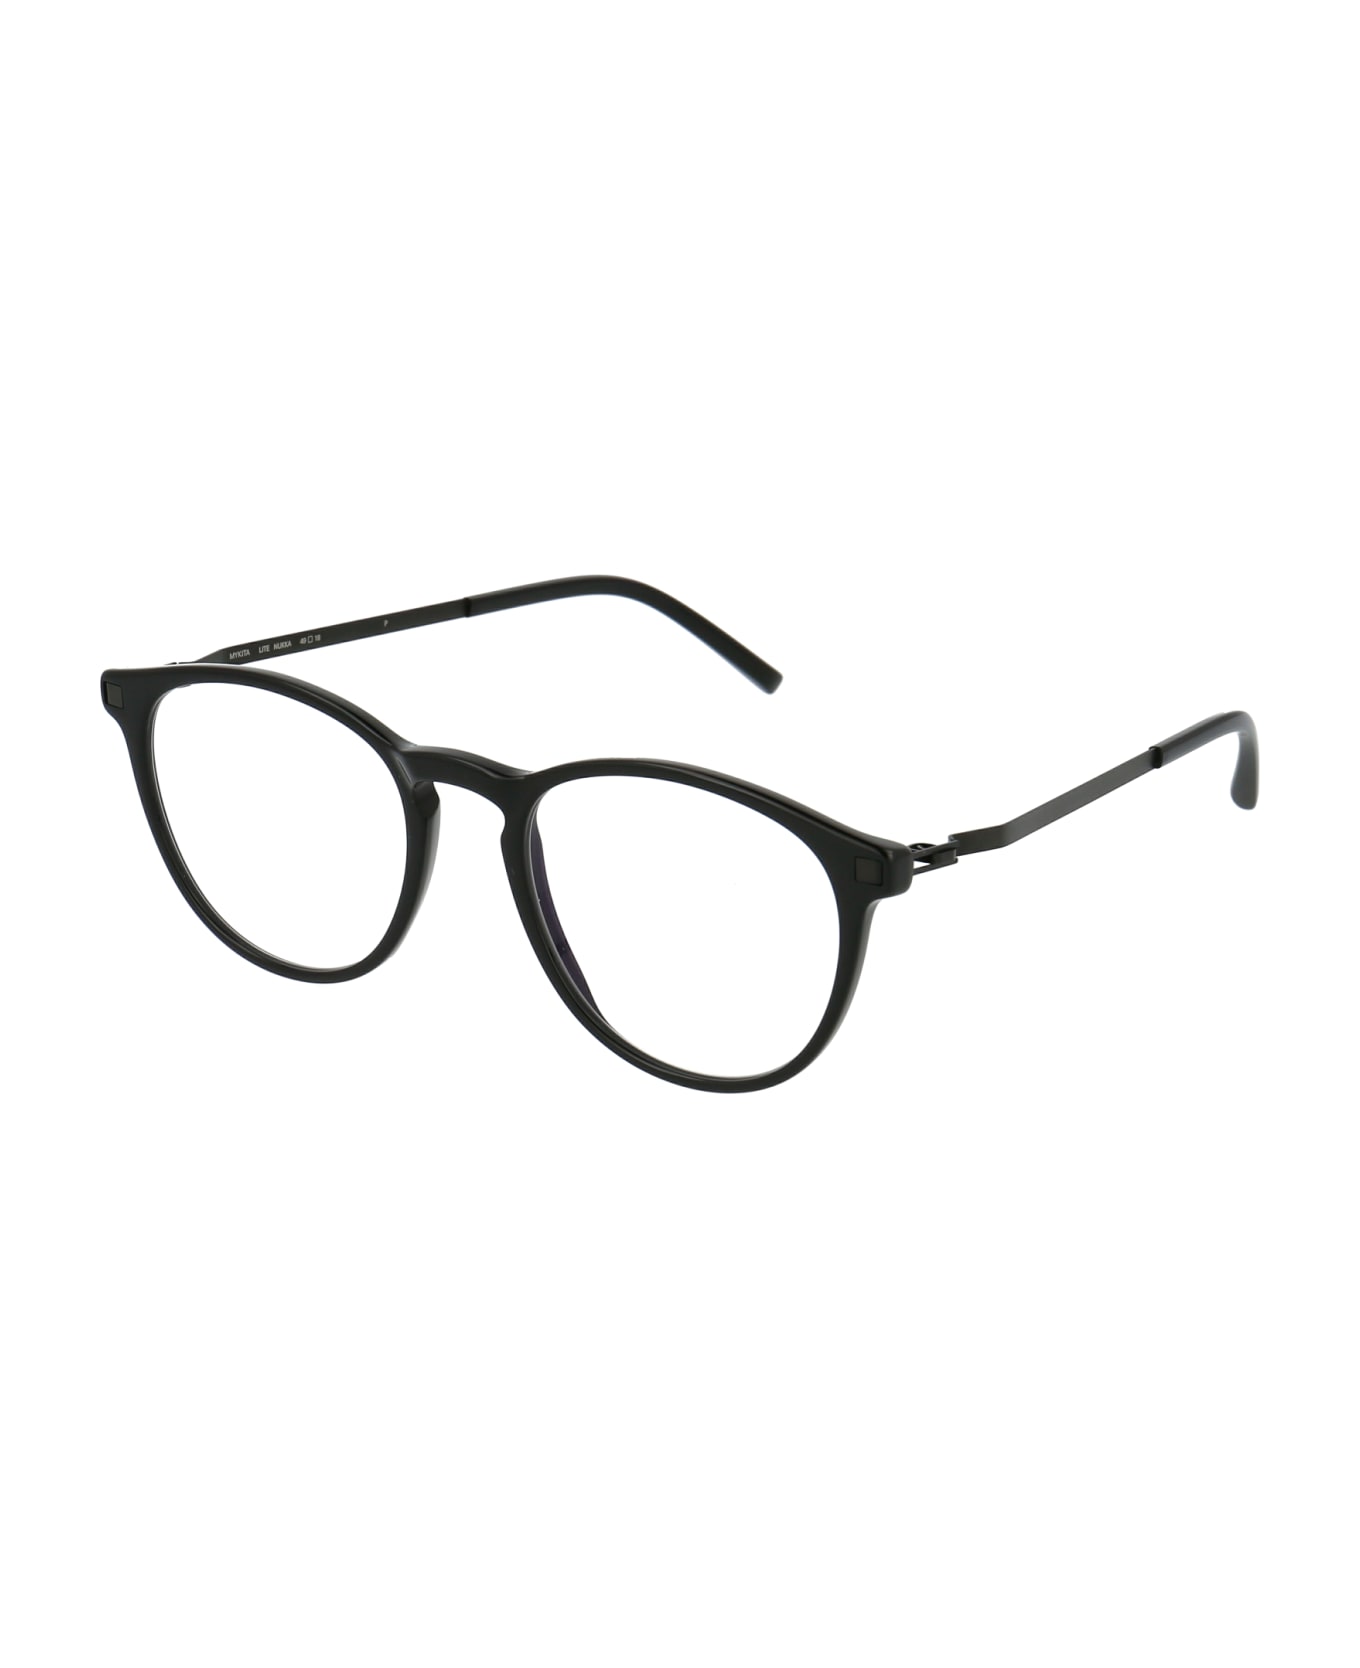 Mykita Nukka Glasses - 915 C2-Black/Black Clear